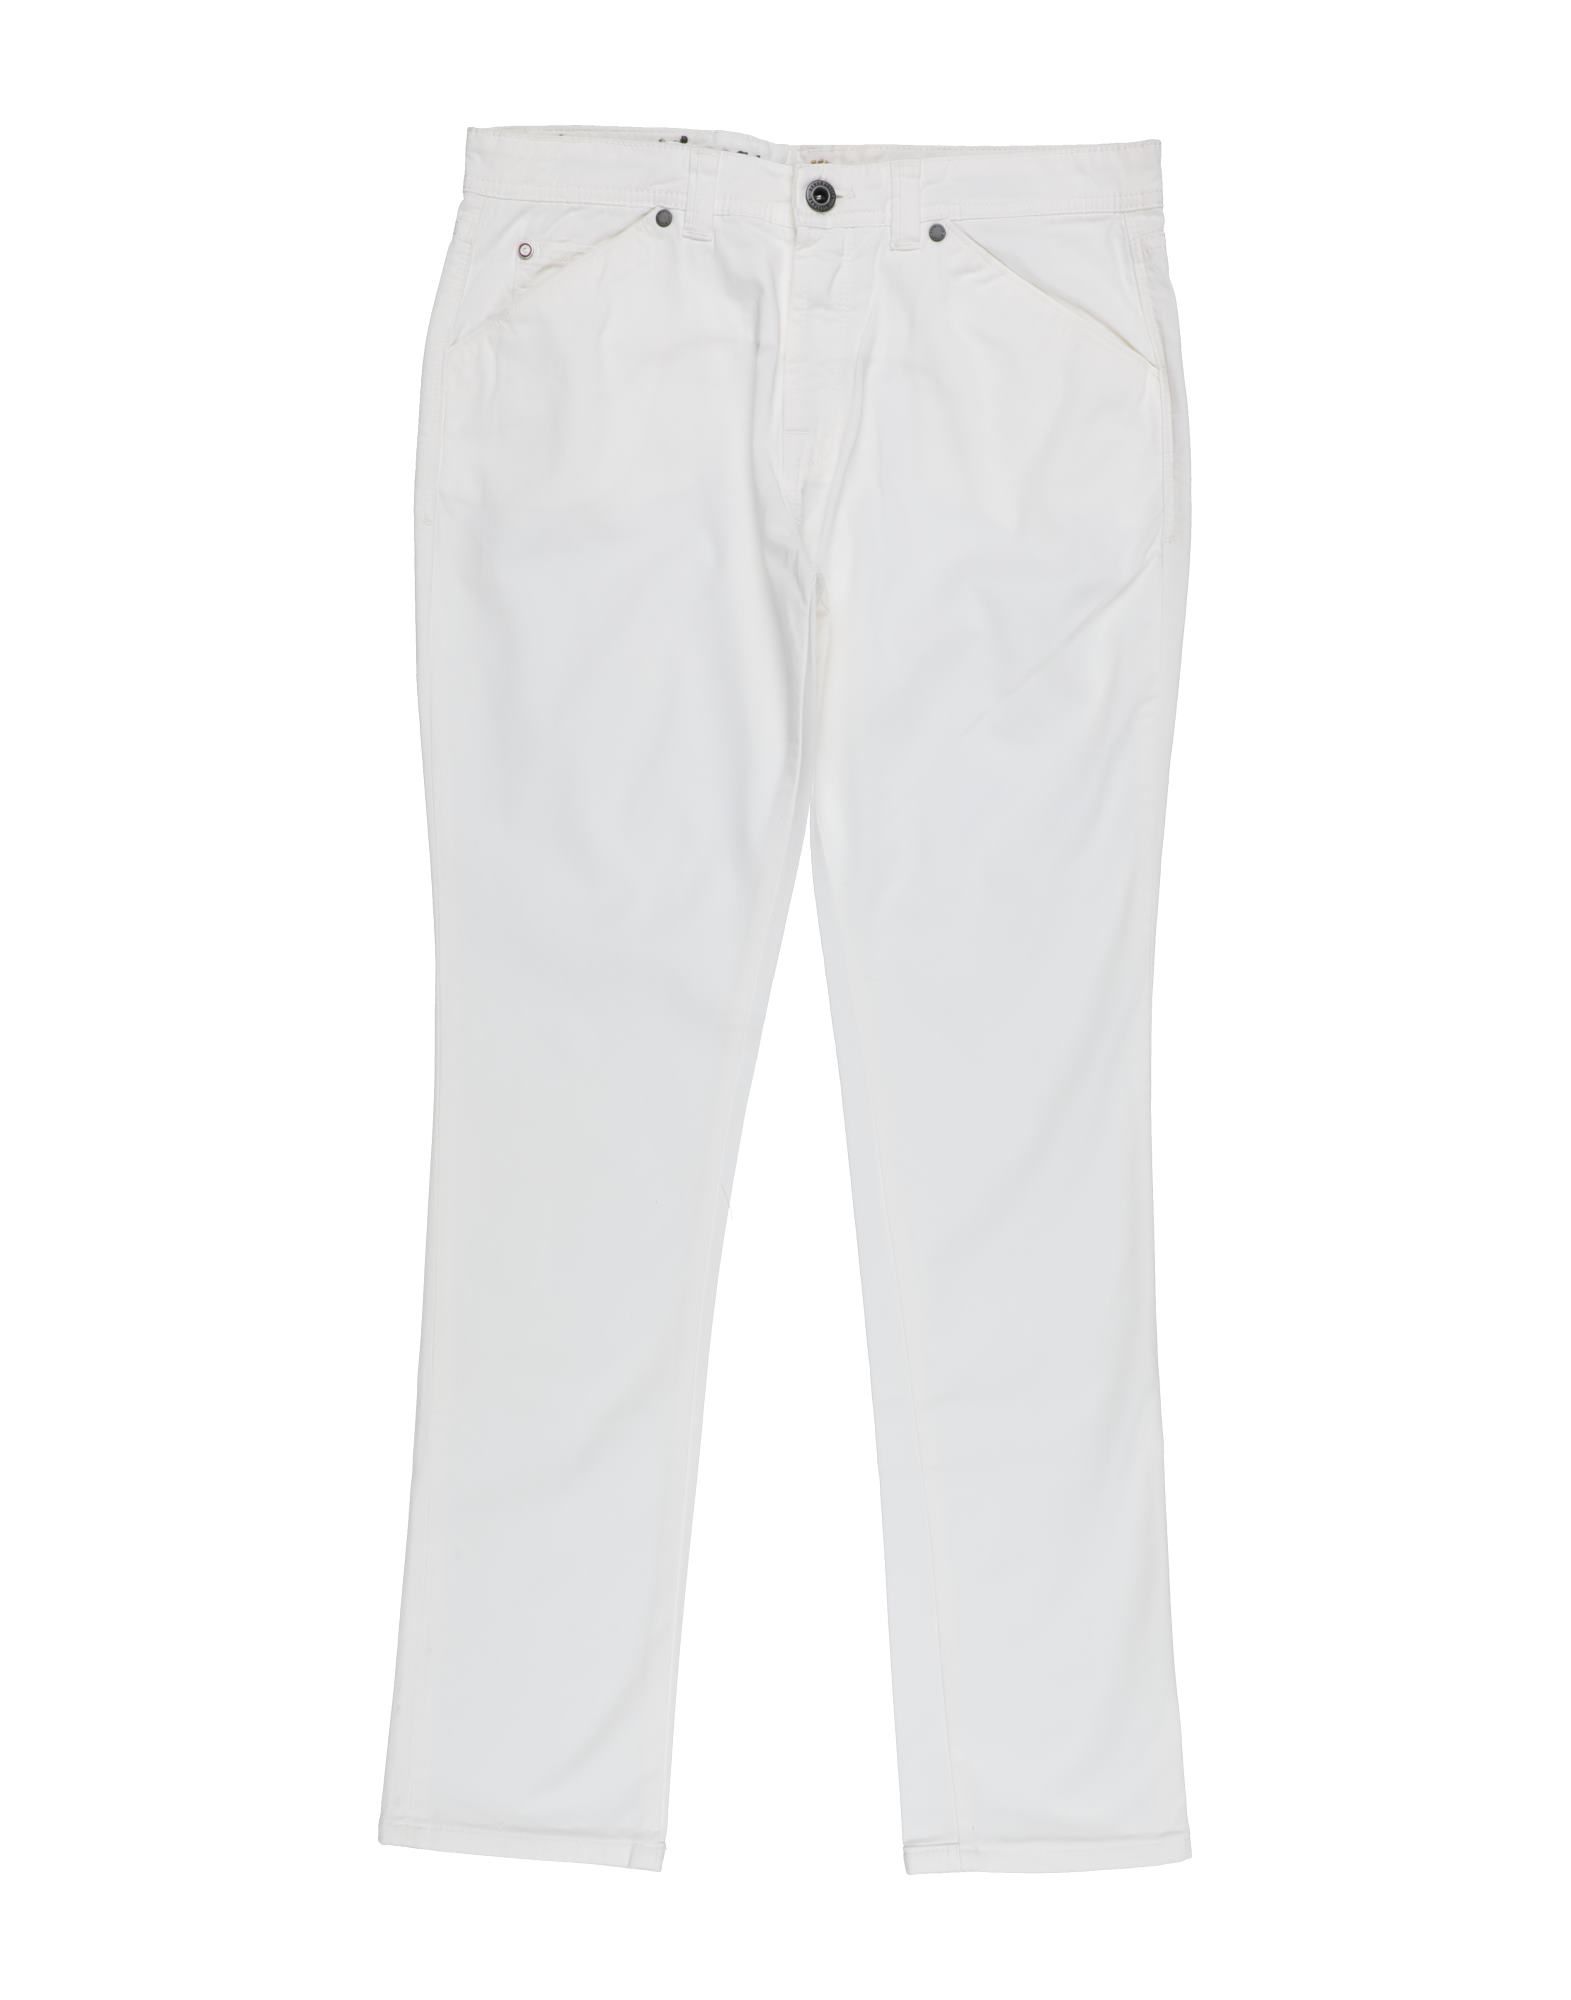 Aeronautica Militare Kids' Pants In White